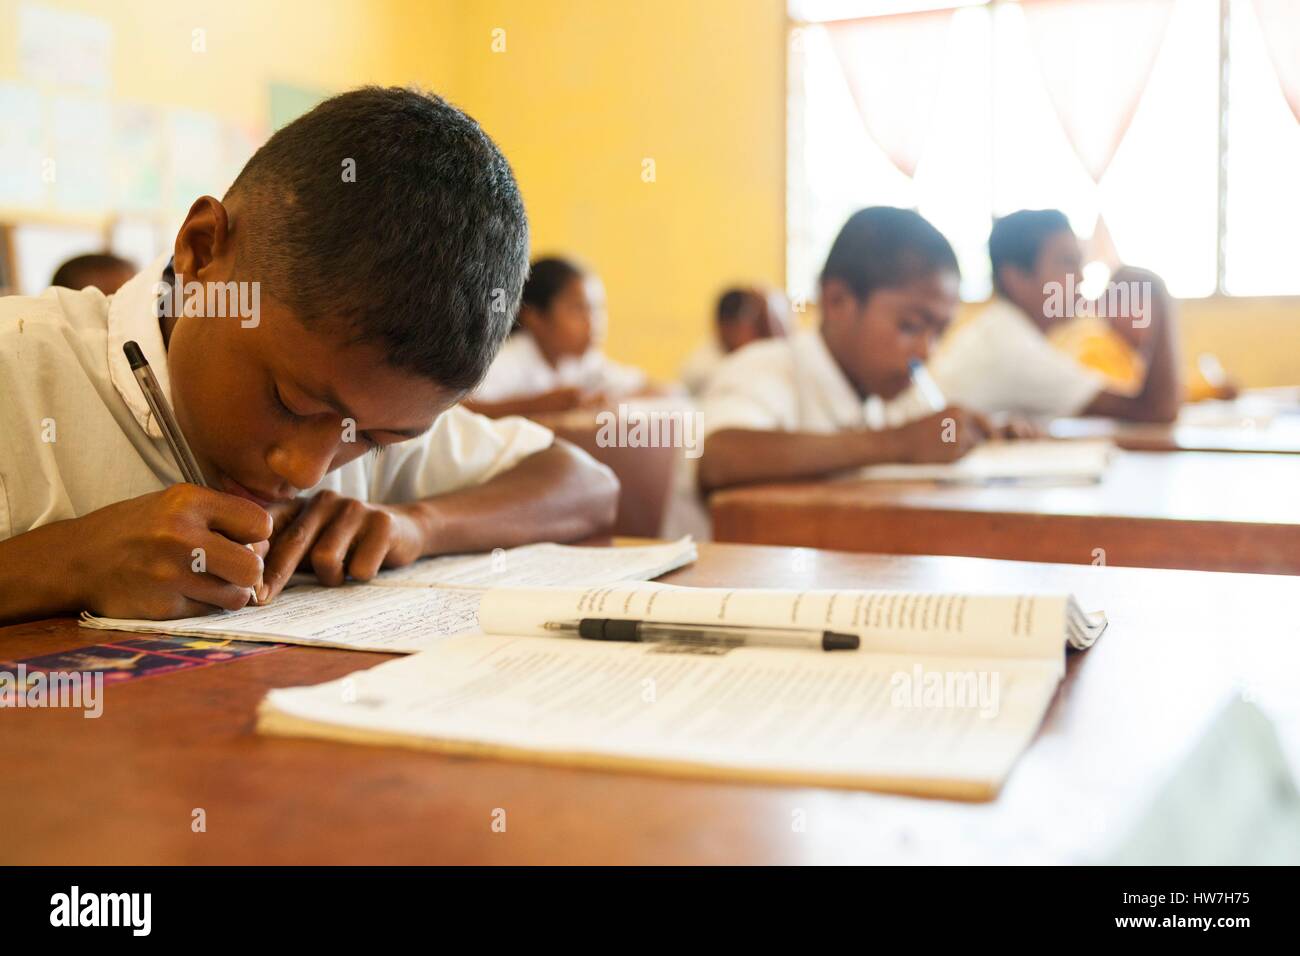 Indonesien, Ost-Nusa Tenggara, West-Timor, South Central Timor Regency, Fatumnasi, Kinder in der Schule Stockfoto